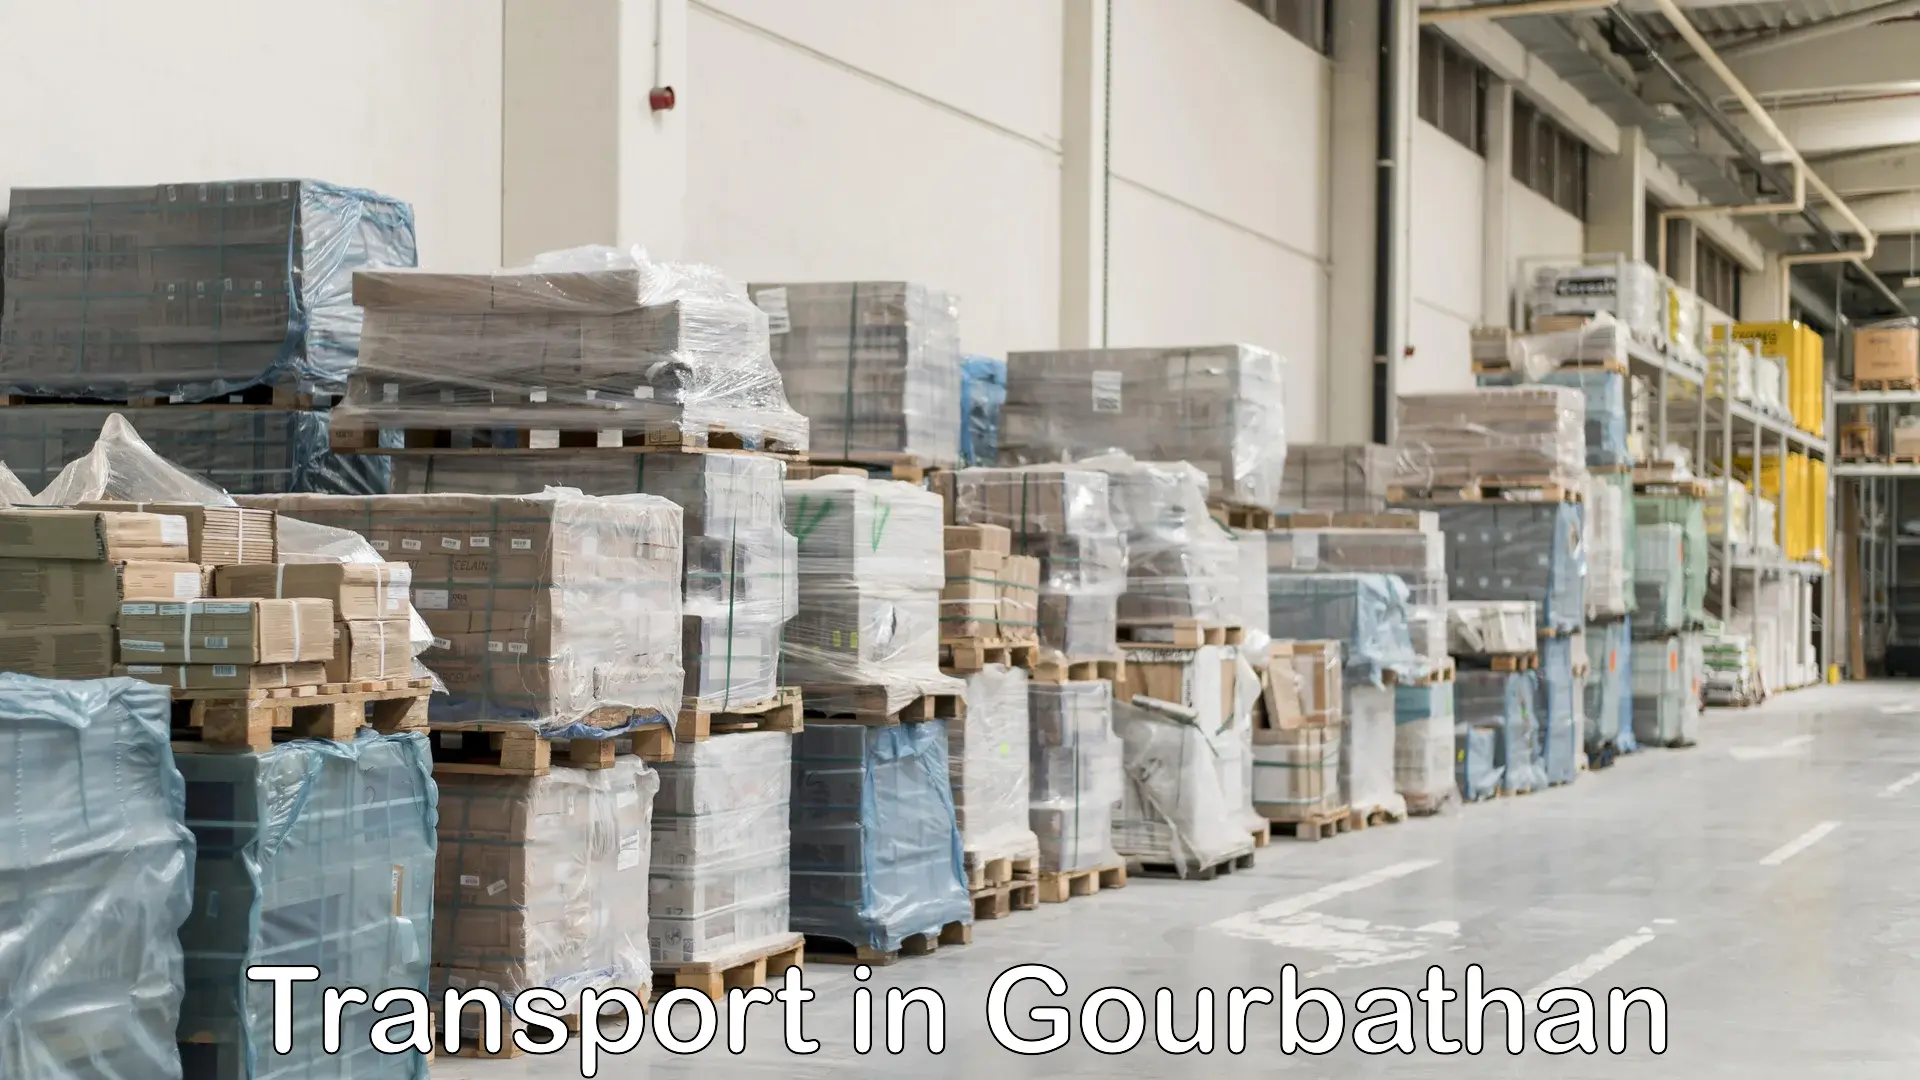 Shipping services in Gourbathan